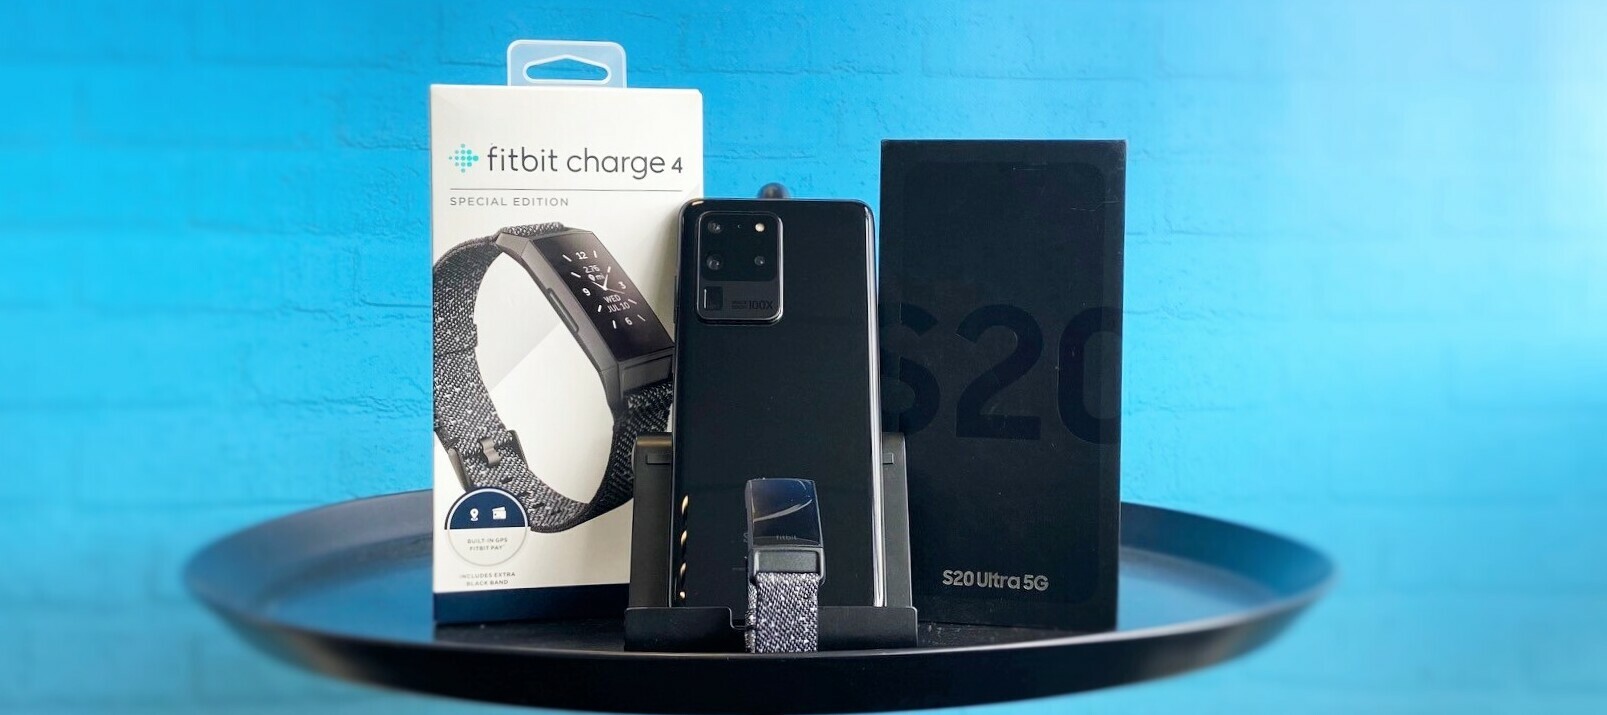 Samsung Galaxy S20 Ultra 5G + Fitbit Charge 4 Special Edition - das smarte Bundle für deinen Test!